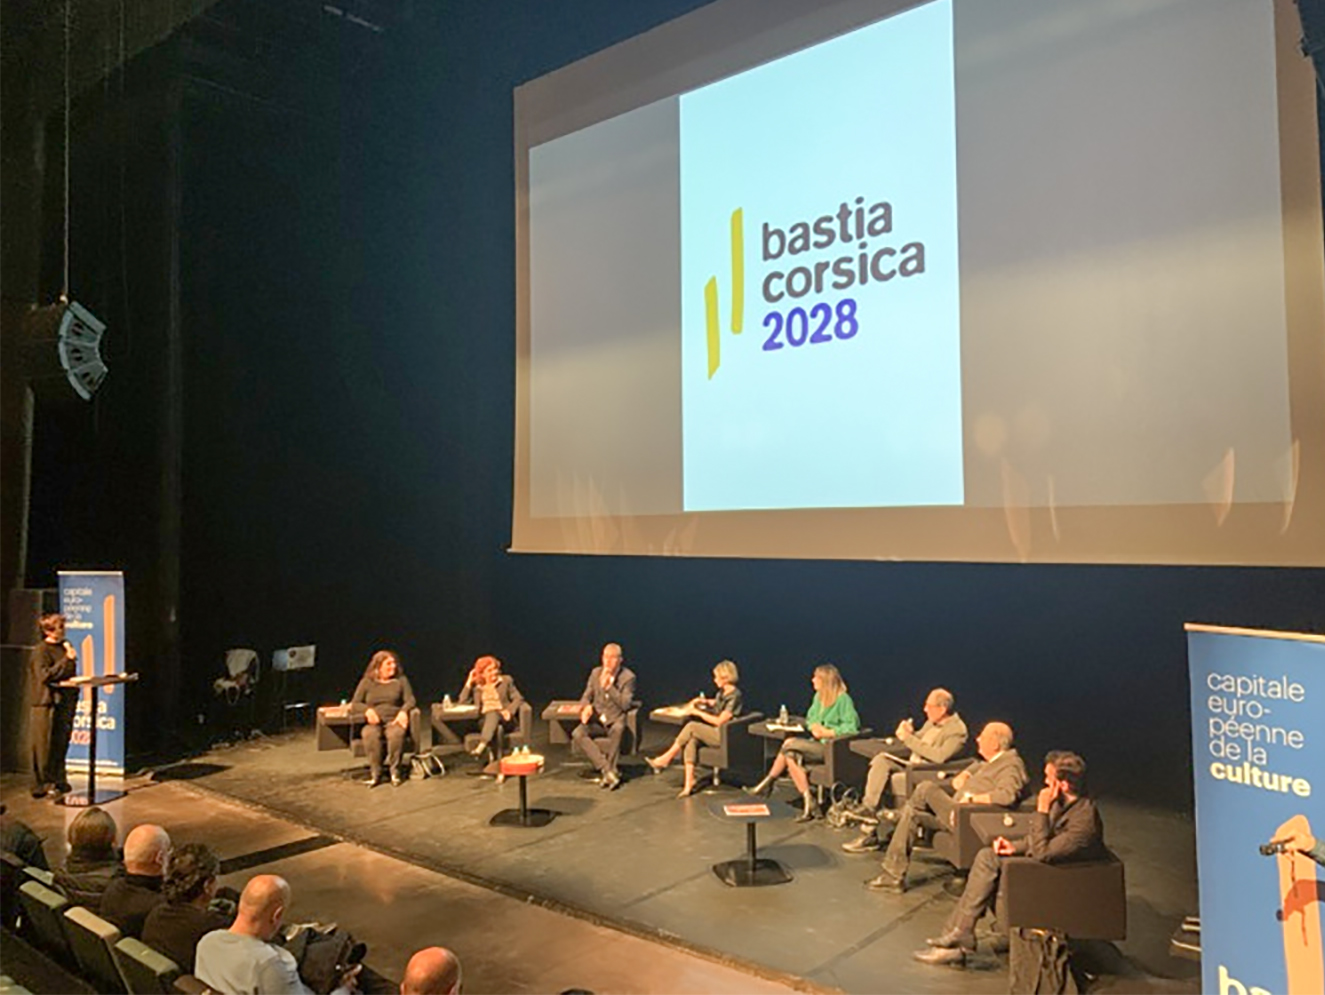 ​Loin de Bastia, Bourges est désignée capitale européenne de la culture 2028